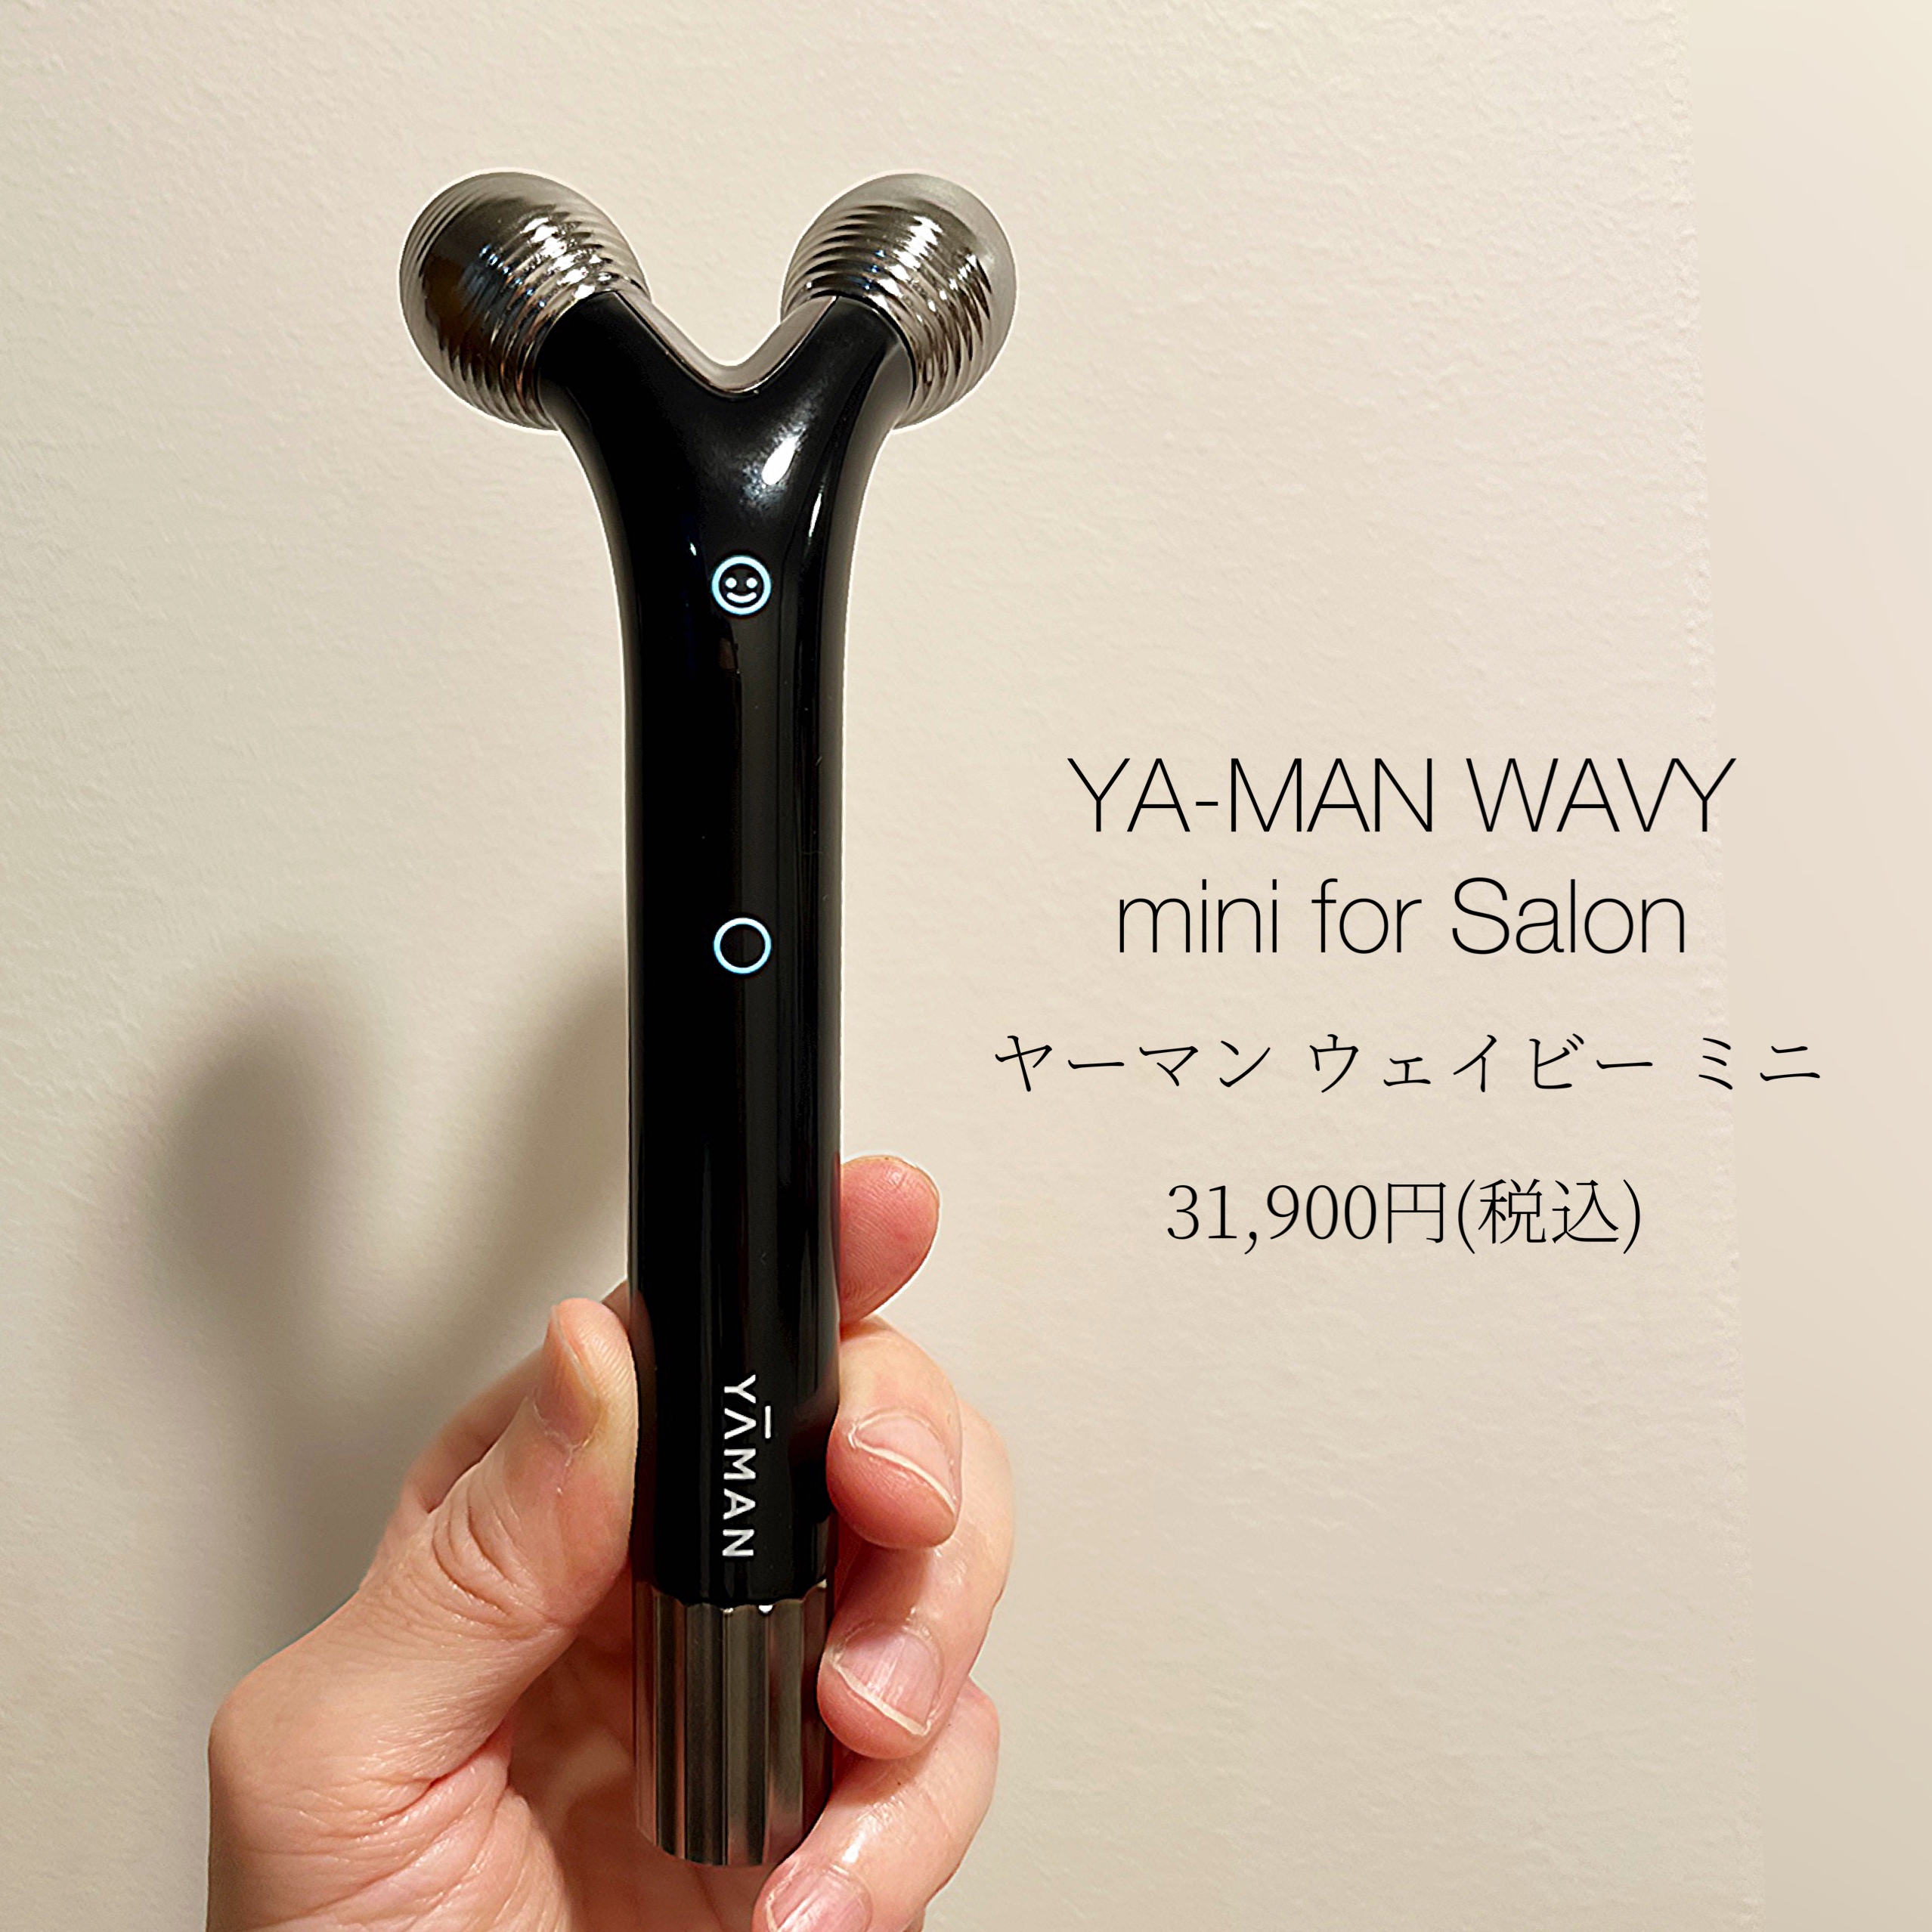 質重視 【専用】YA-MAN(ヤーマン) WAVY mini for Salon - 美容家電